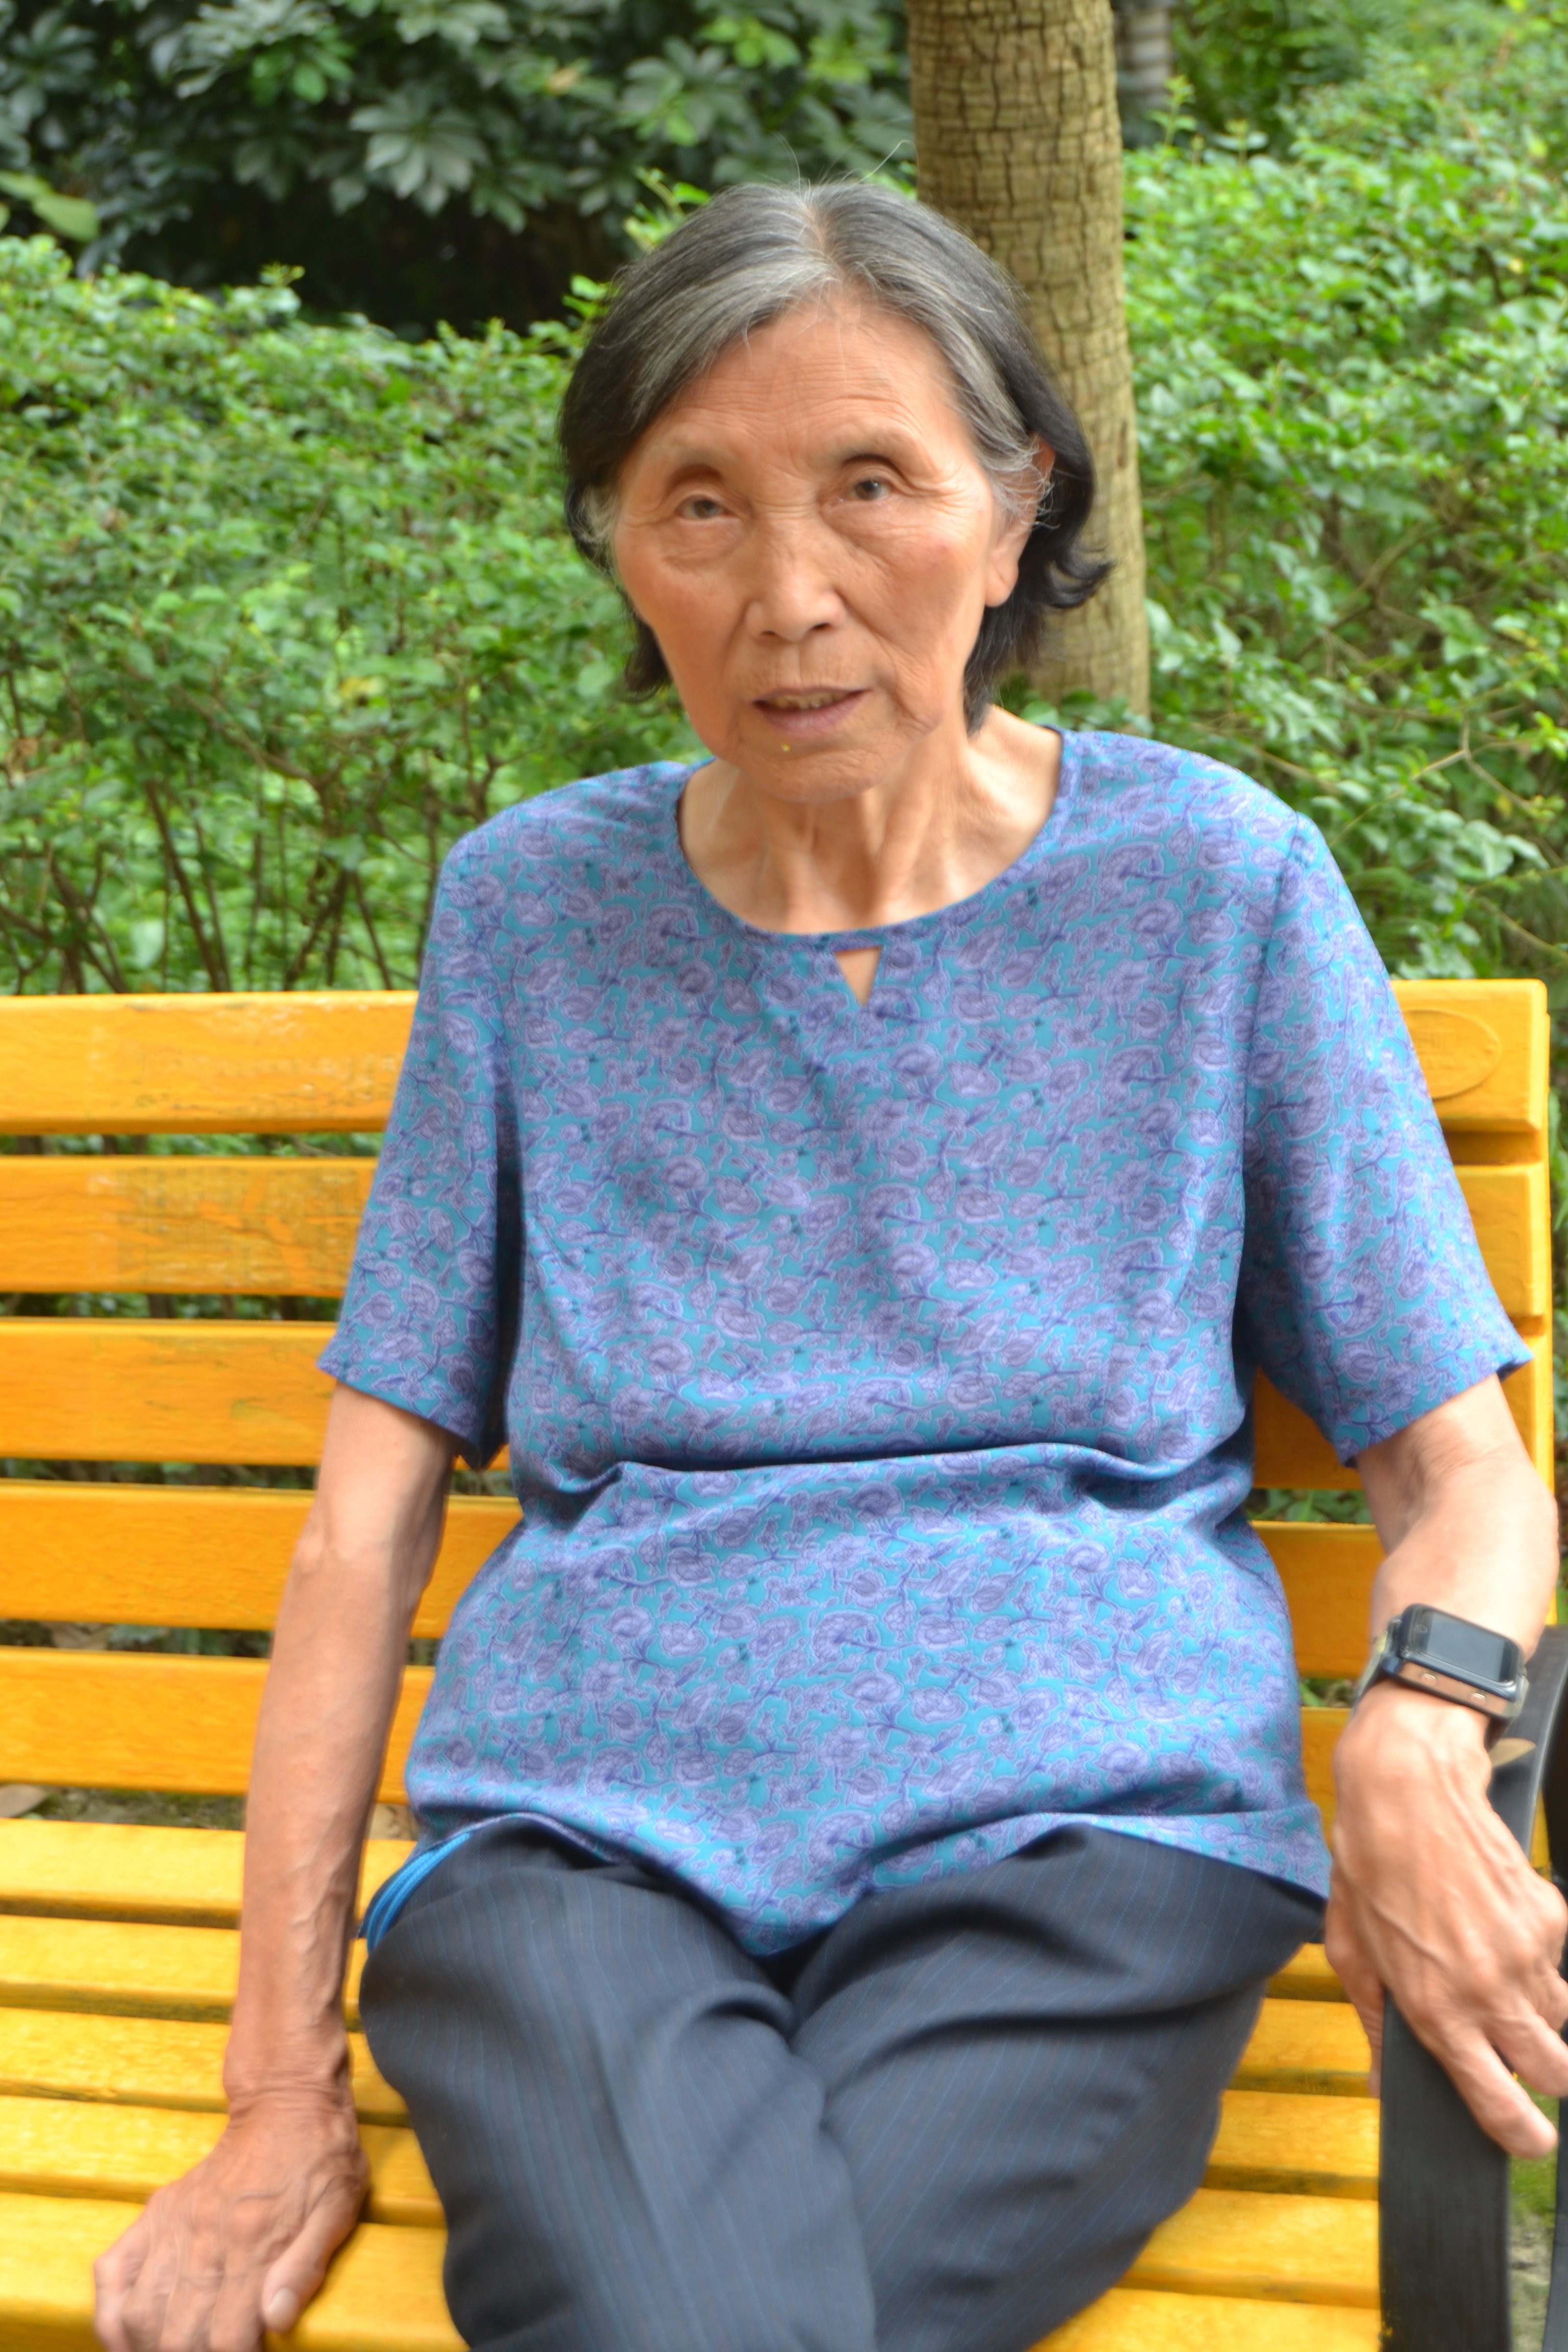 通透不做作耿直爽快直言,快80岁的老奶奶谈人生意义和人生价值